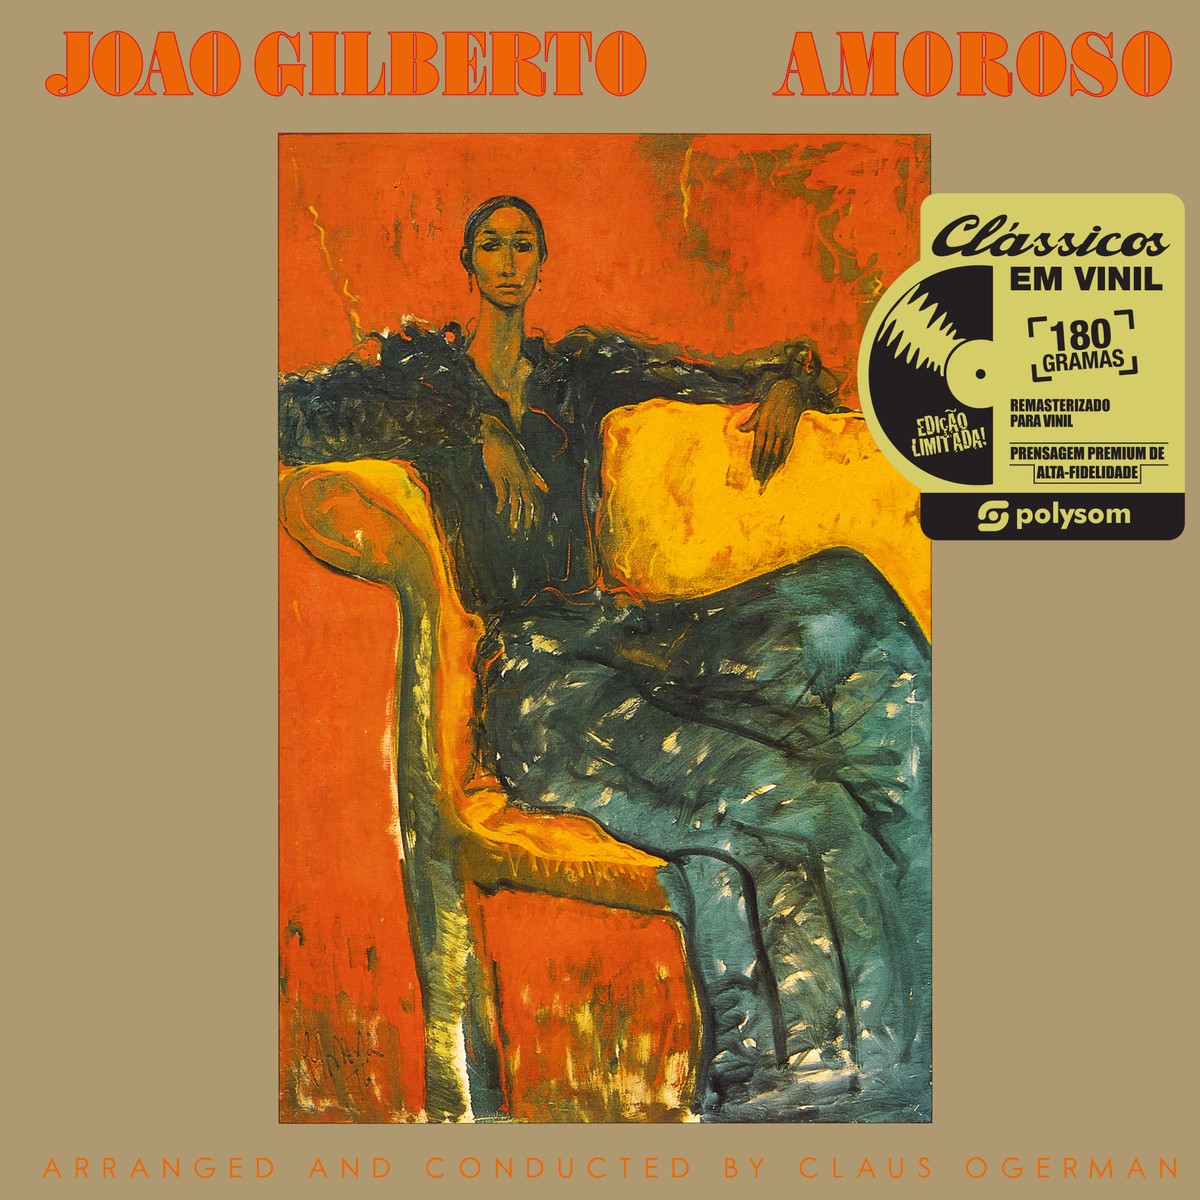 Reedição em LP de 'Amoroso', álbum de João Gilberto, é o que de 